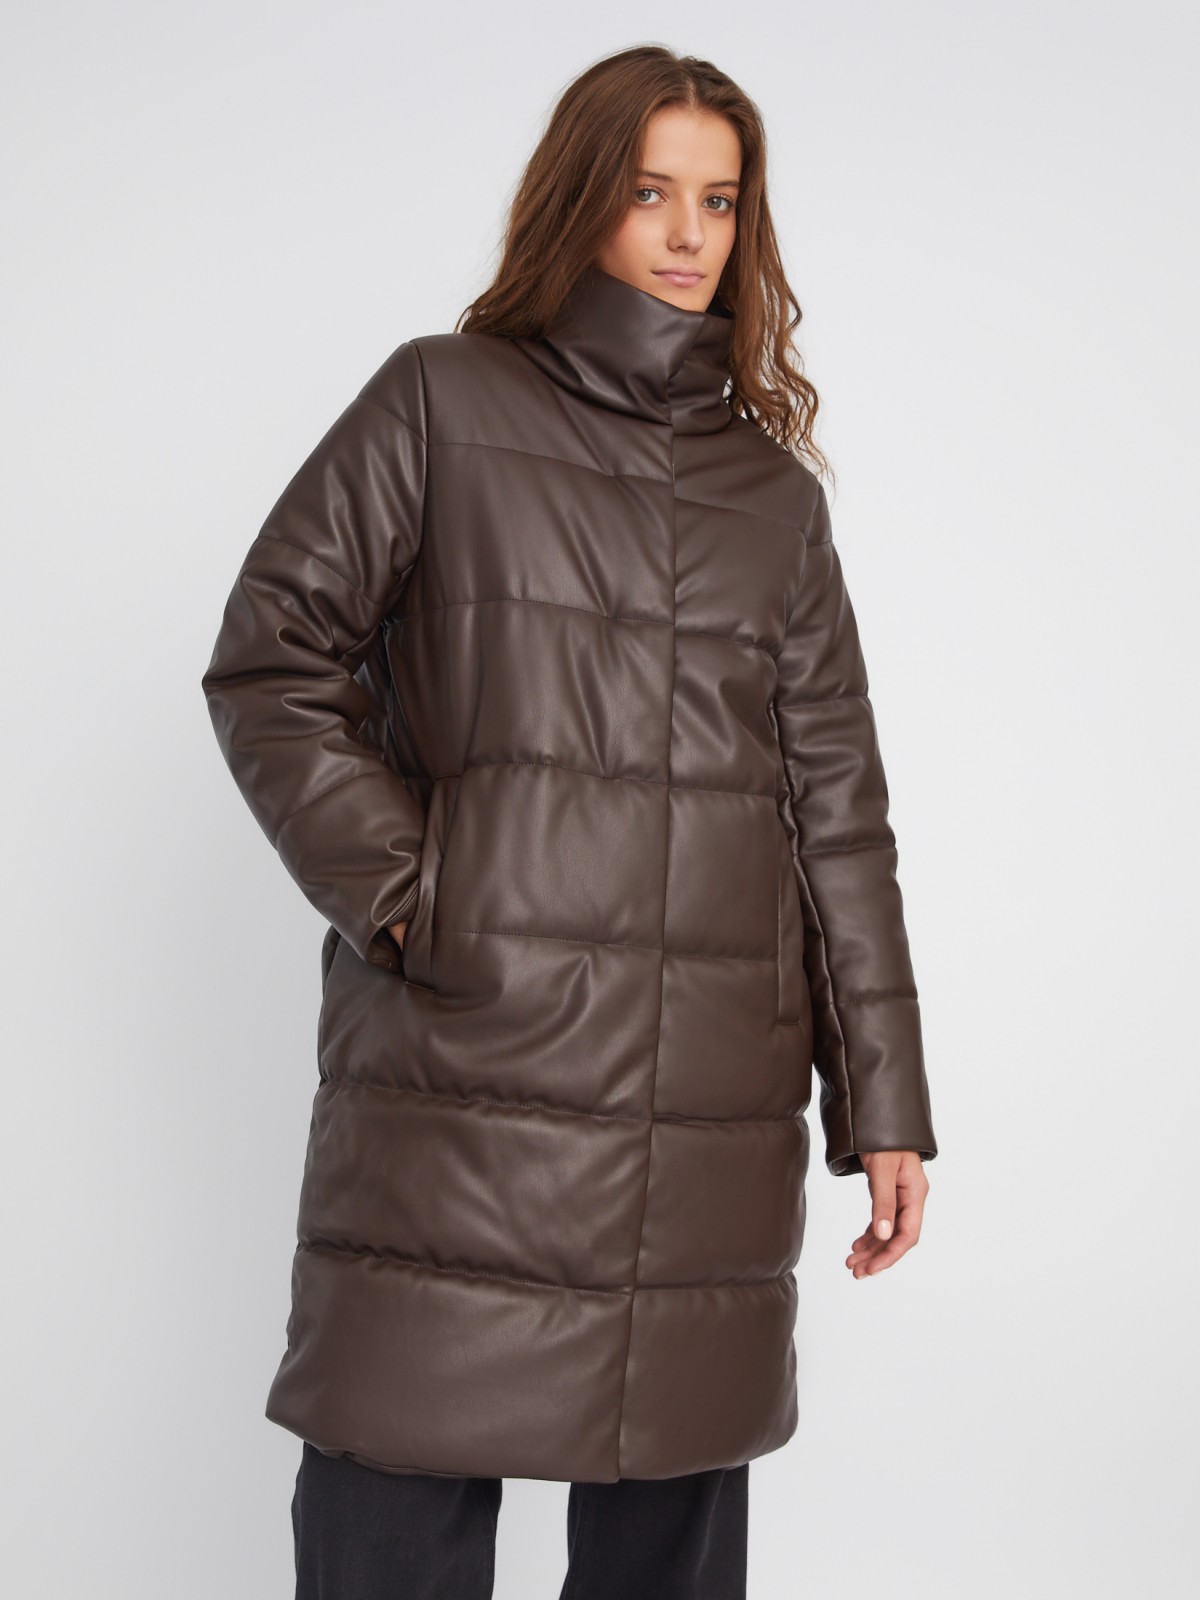 Тёплая стёганая куртка-пальто из экокожи с высоким воротником zolla 023345202054, цвет коричневый, размер XS - фото 3